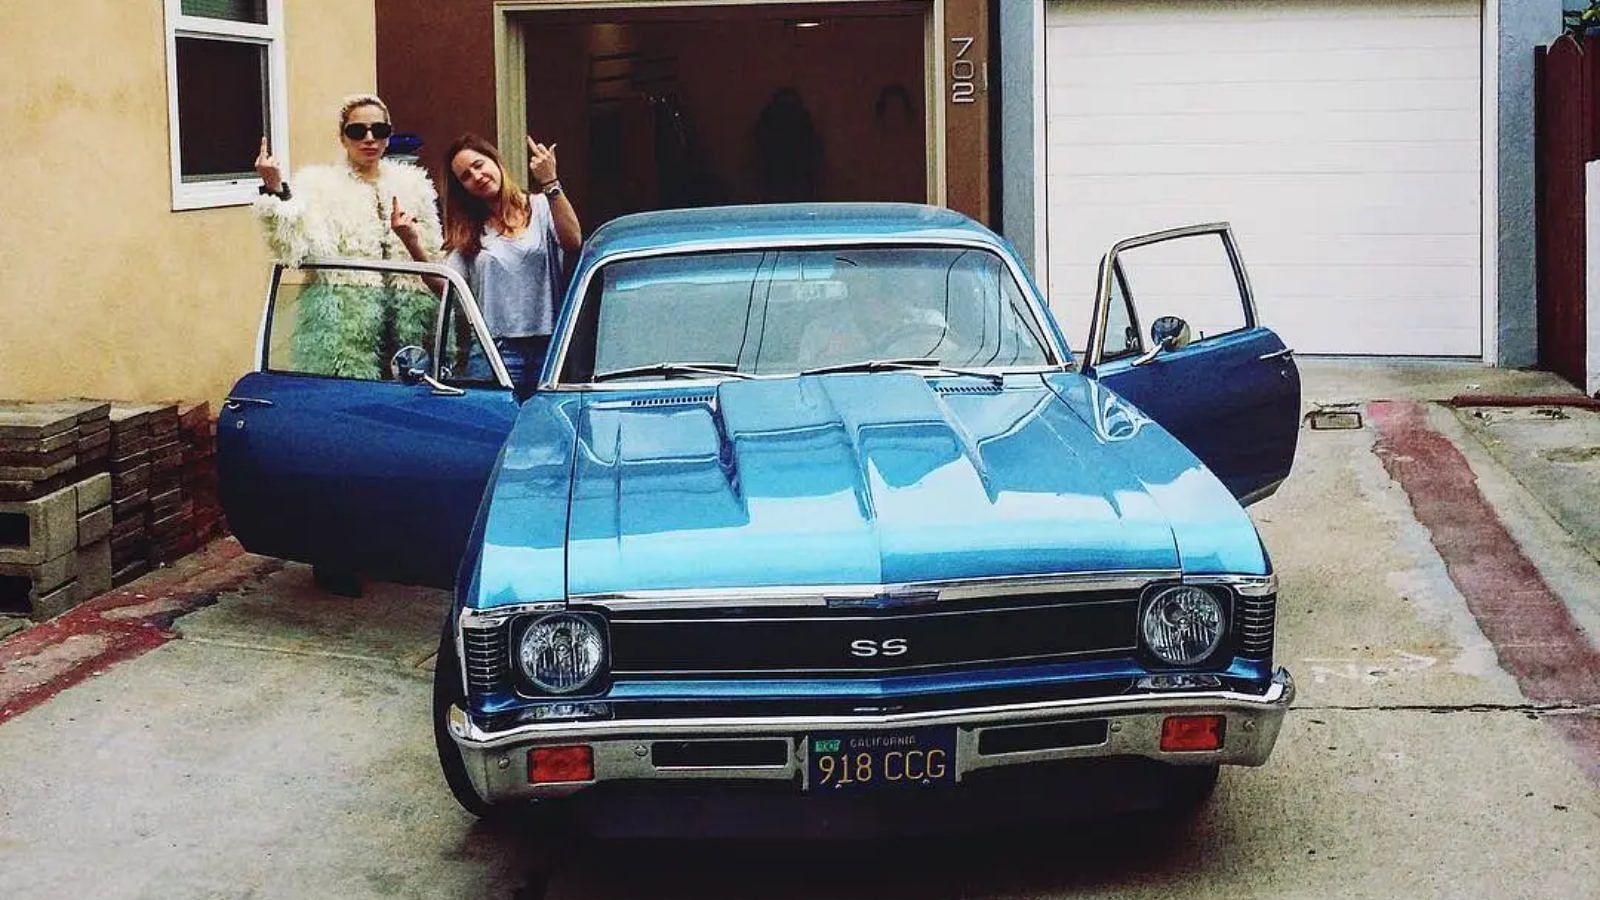 Lady Gaga's 1969 Chevrolet Nova SS